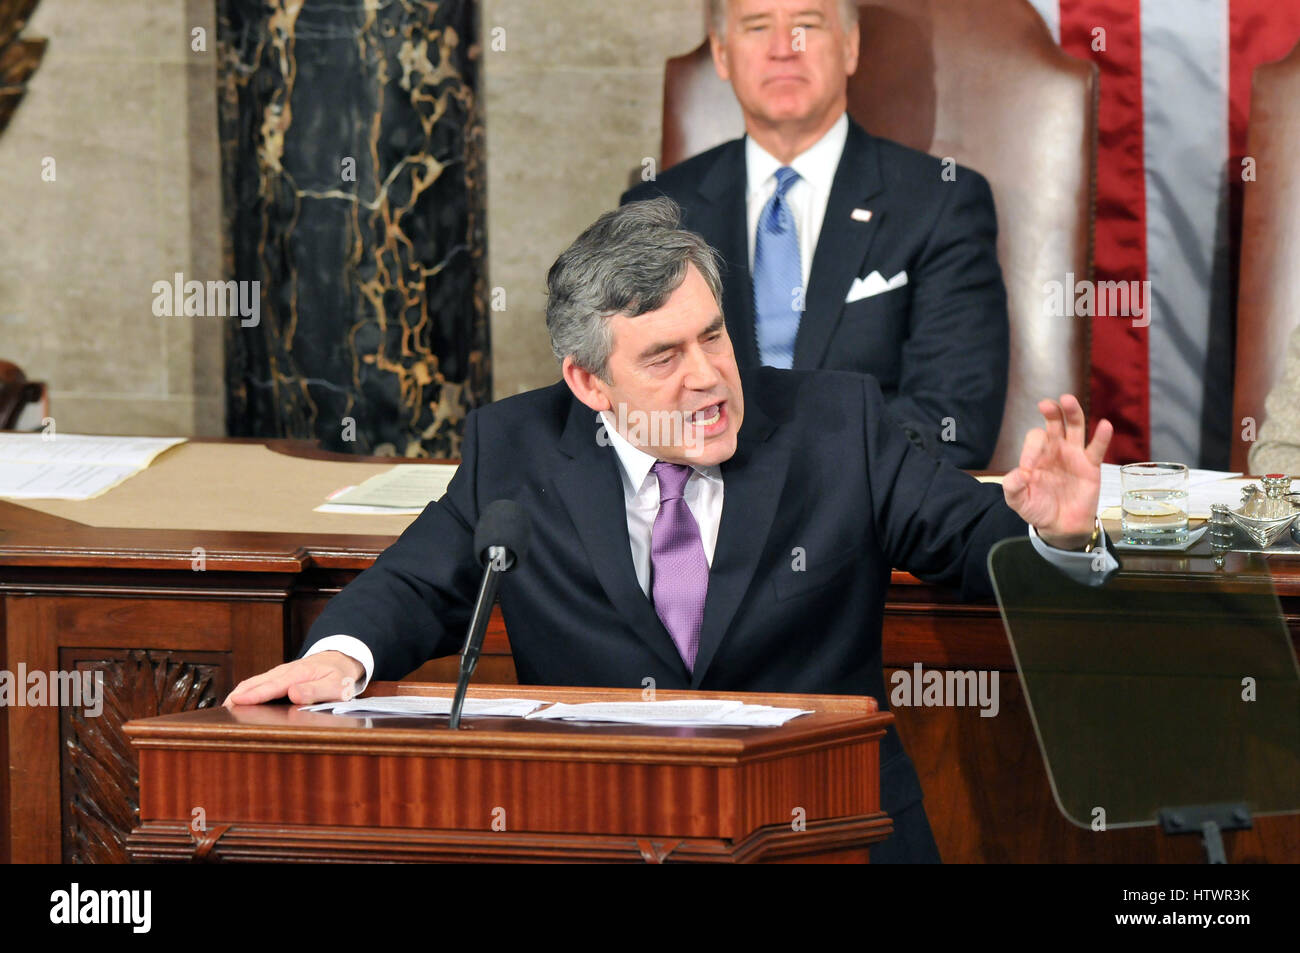 Washington, DC - 4. März 2009--The Recht Honorable Gordon Brown, M.P., Premierminister des Vereinigten Königreichs, befasst sich mit einer gemeinsamen Sitzung des Kongresses der Vereinigten Staaten in den US Kapitol in Washington, D.C auf Mittwoch, 4. März 2009 Stockfoto